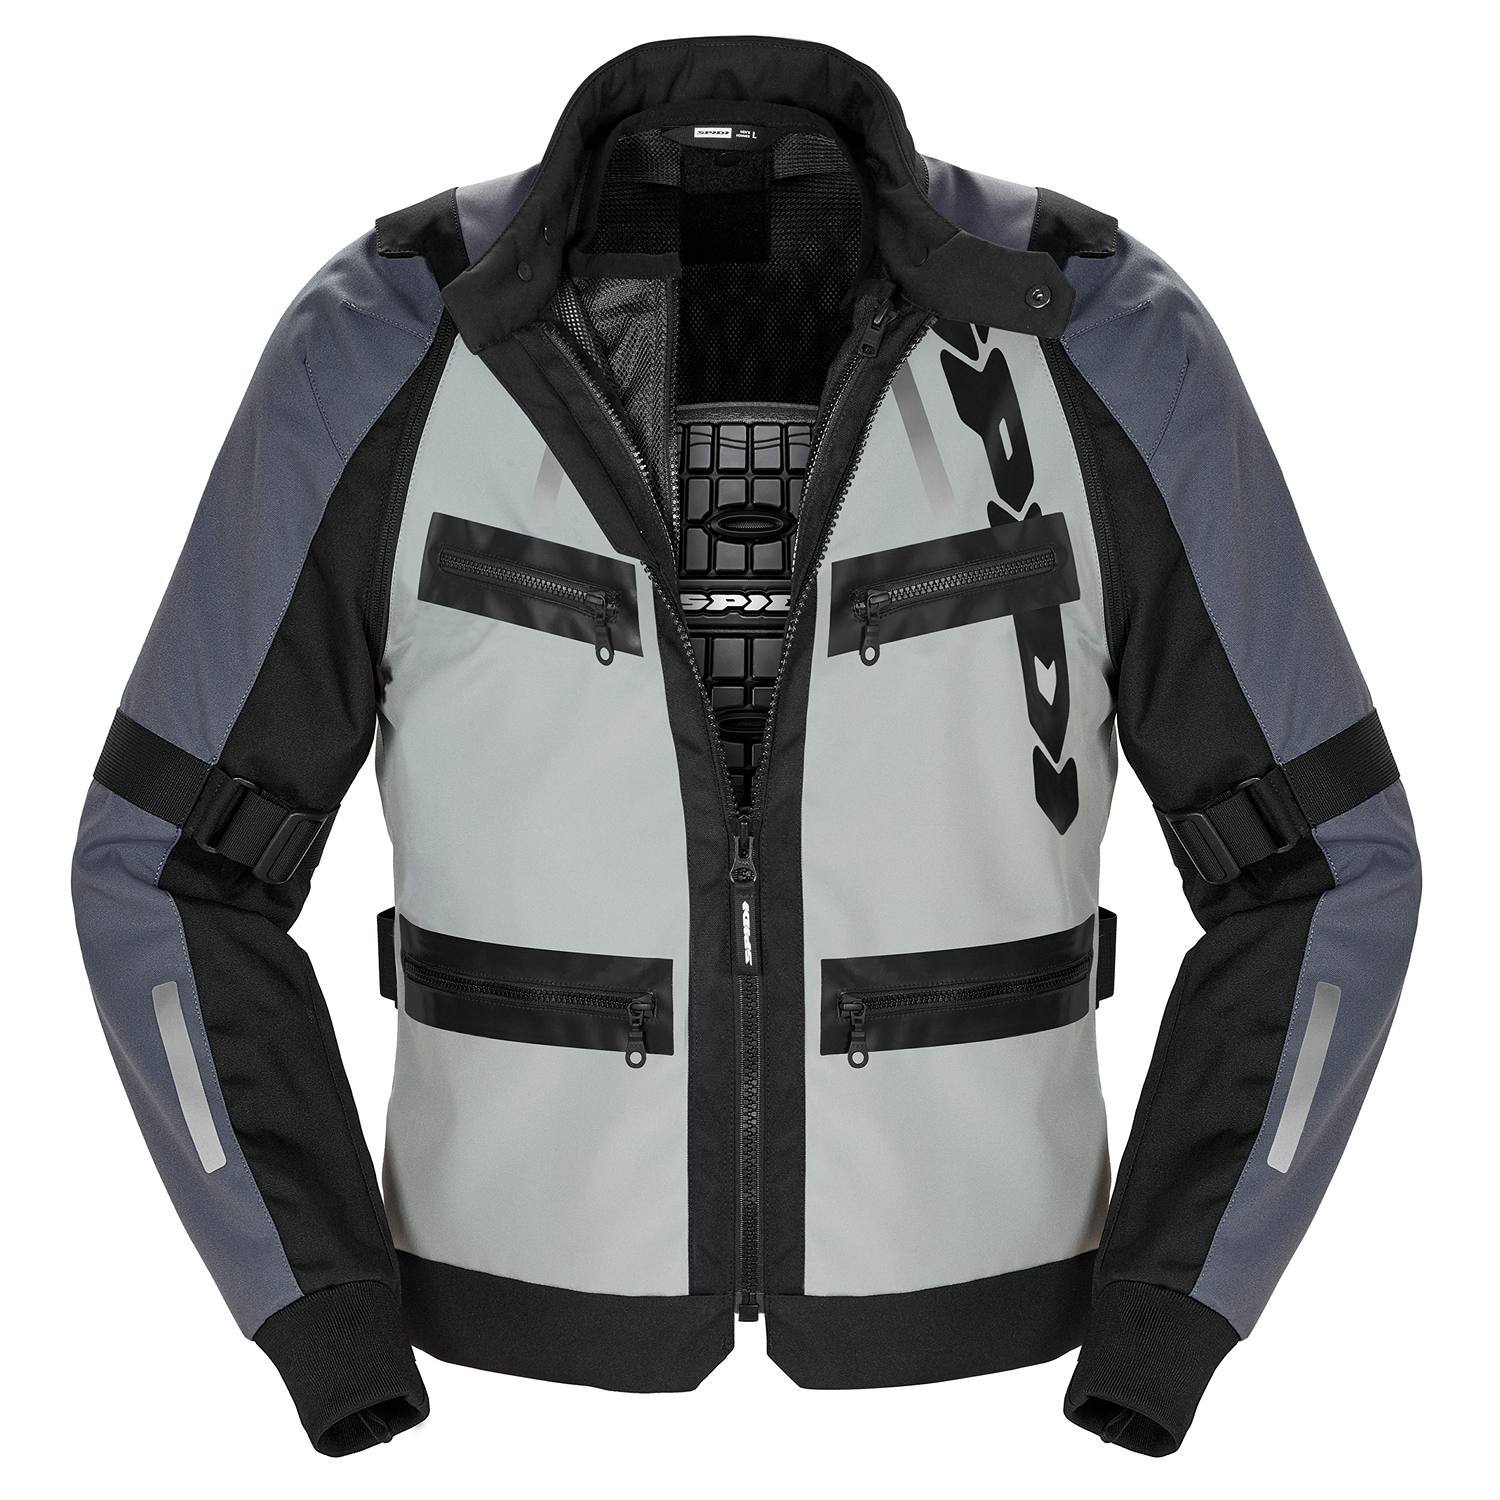 Image of Spidi Enduro Pro Jacket Black Grey Size 3XL ID 8030161484922